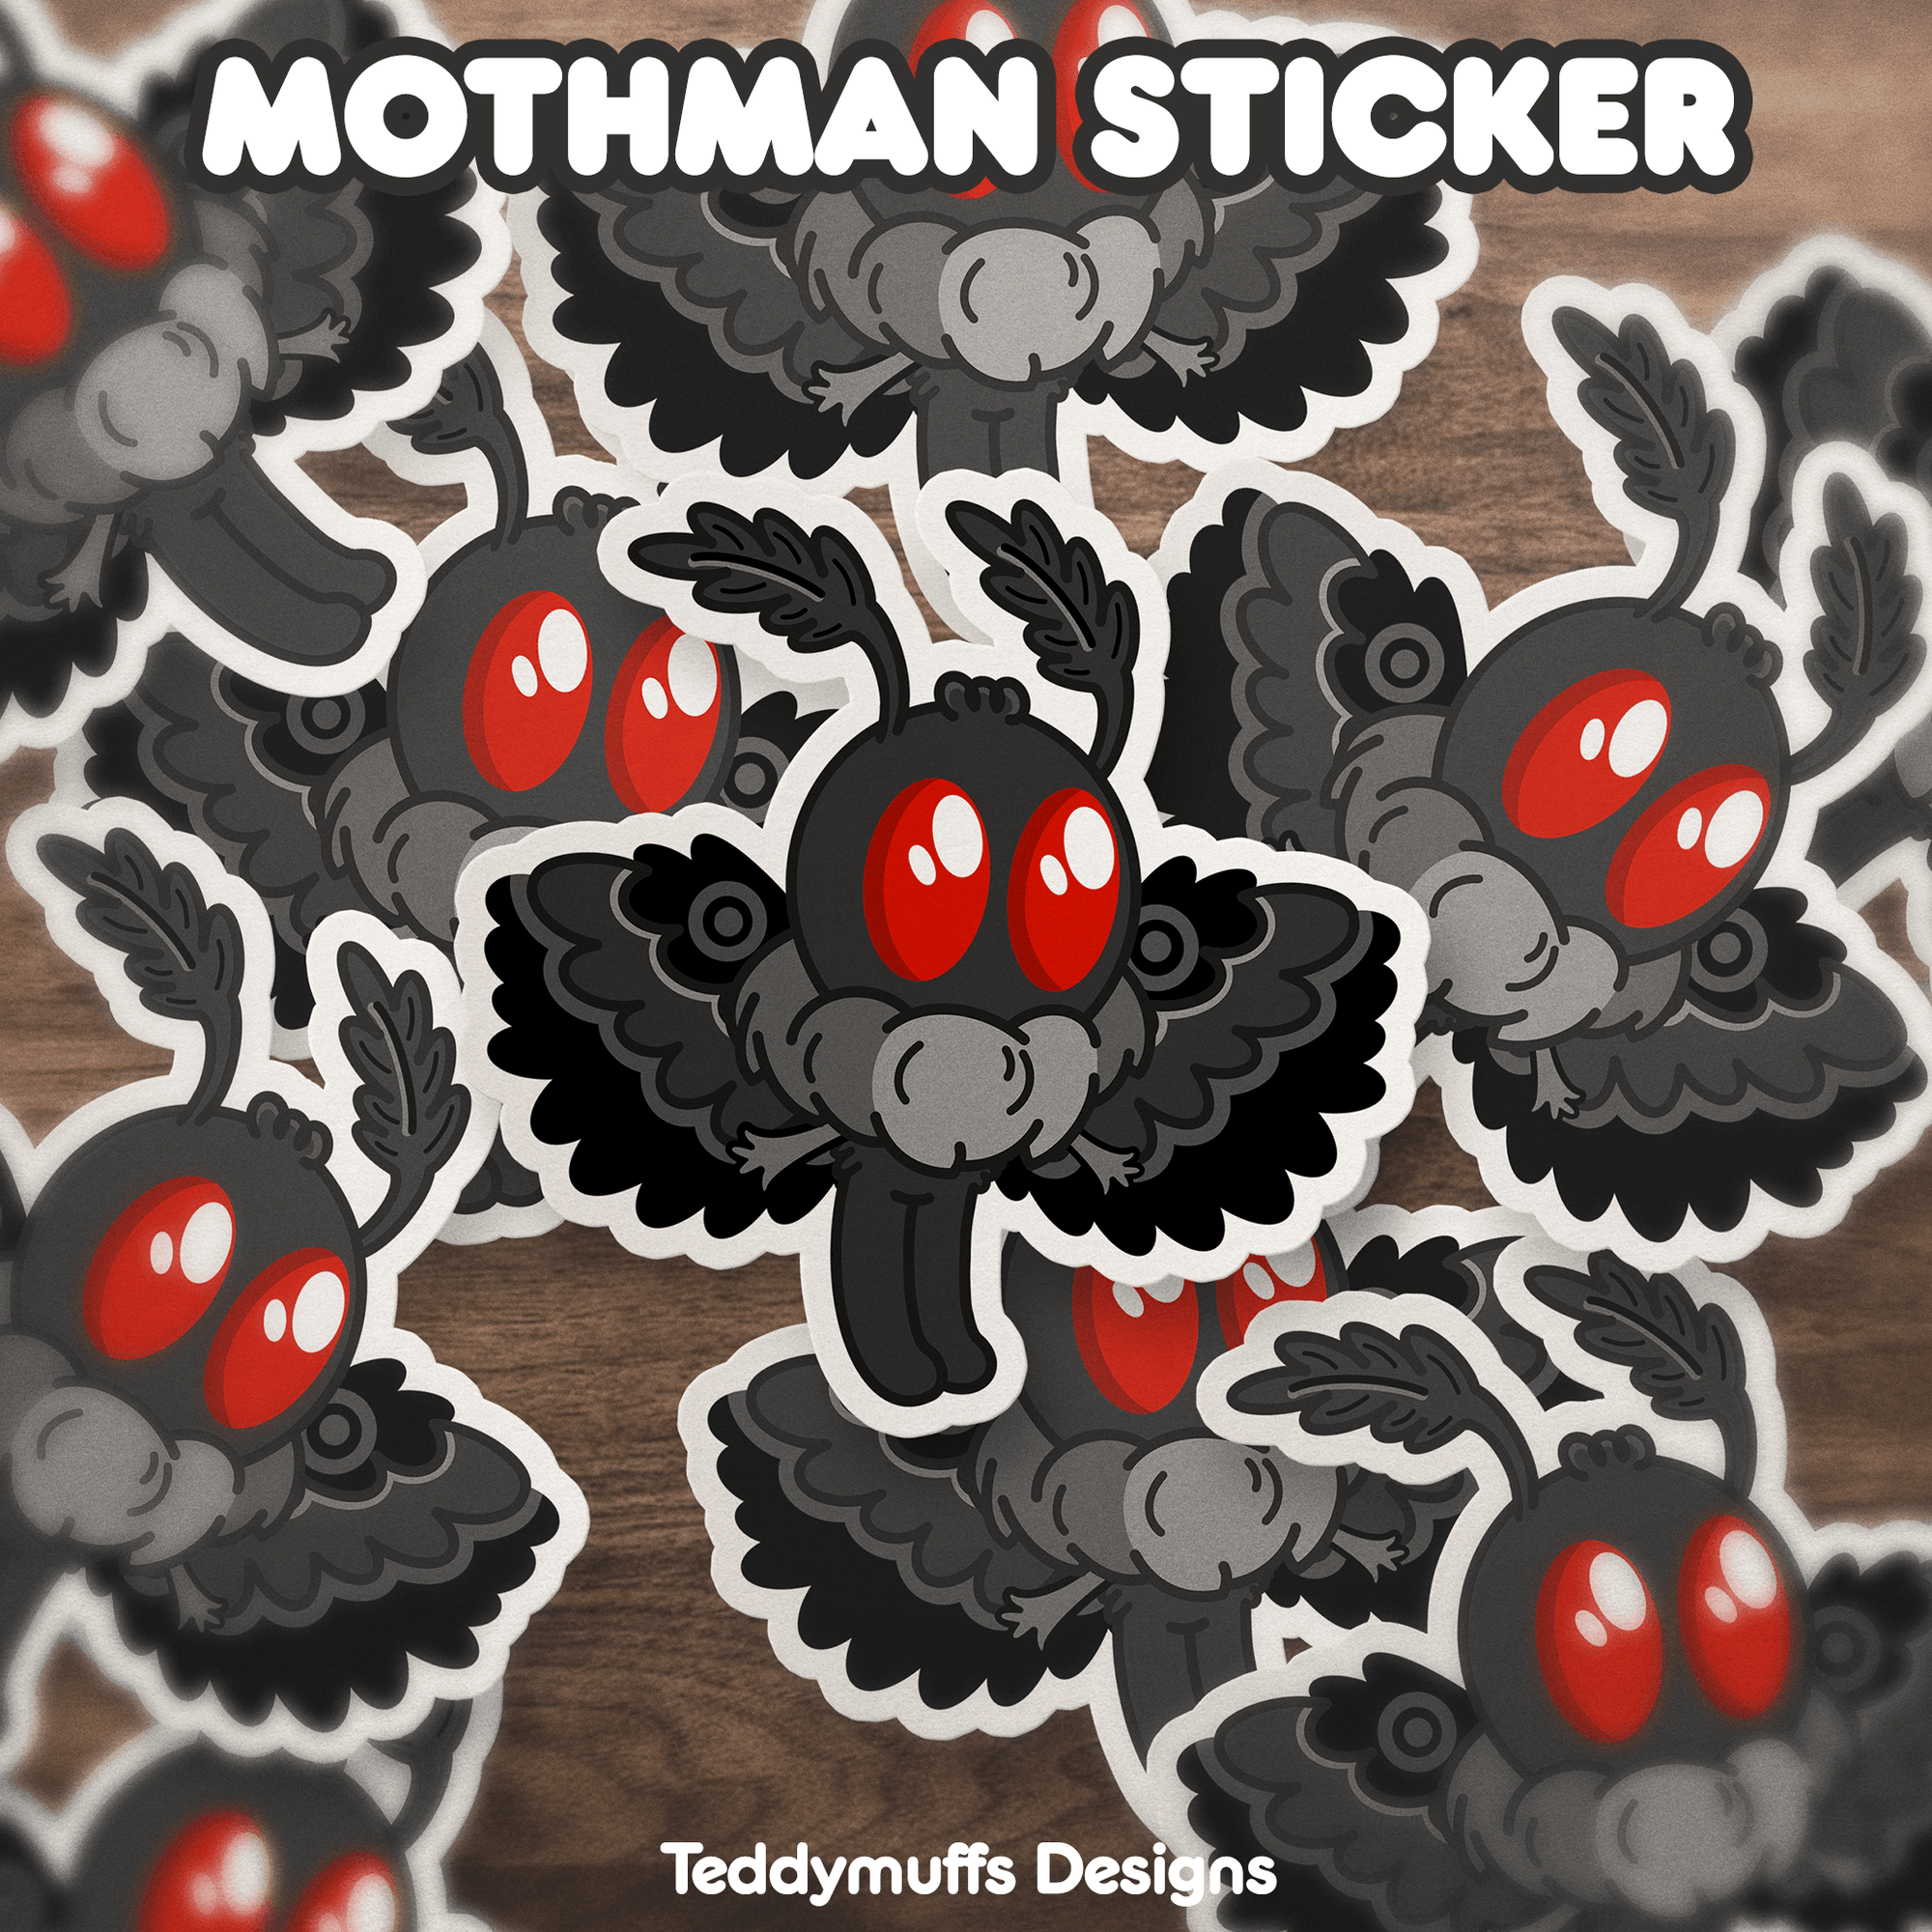 Mothman (Cryptid) Sticker - Teddymuffs Designs